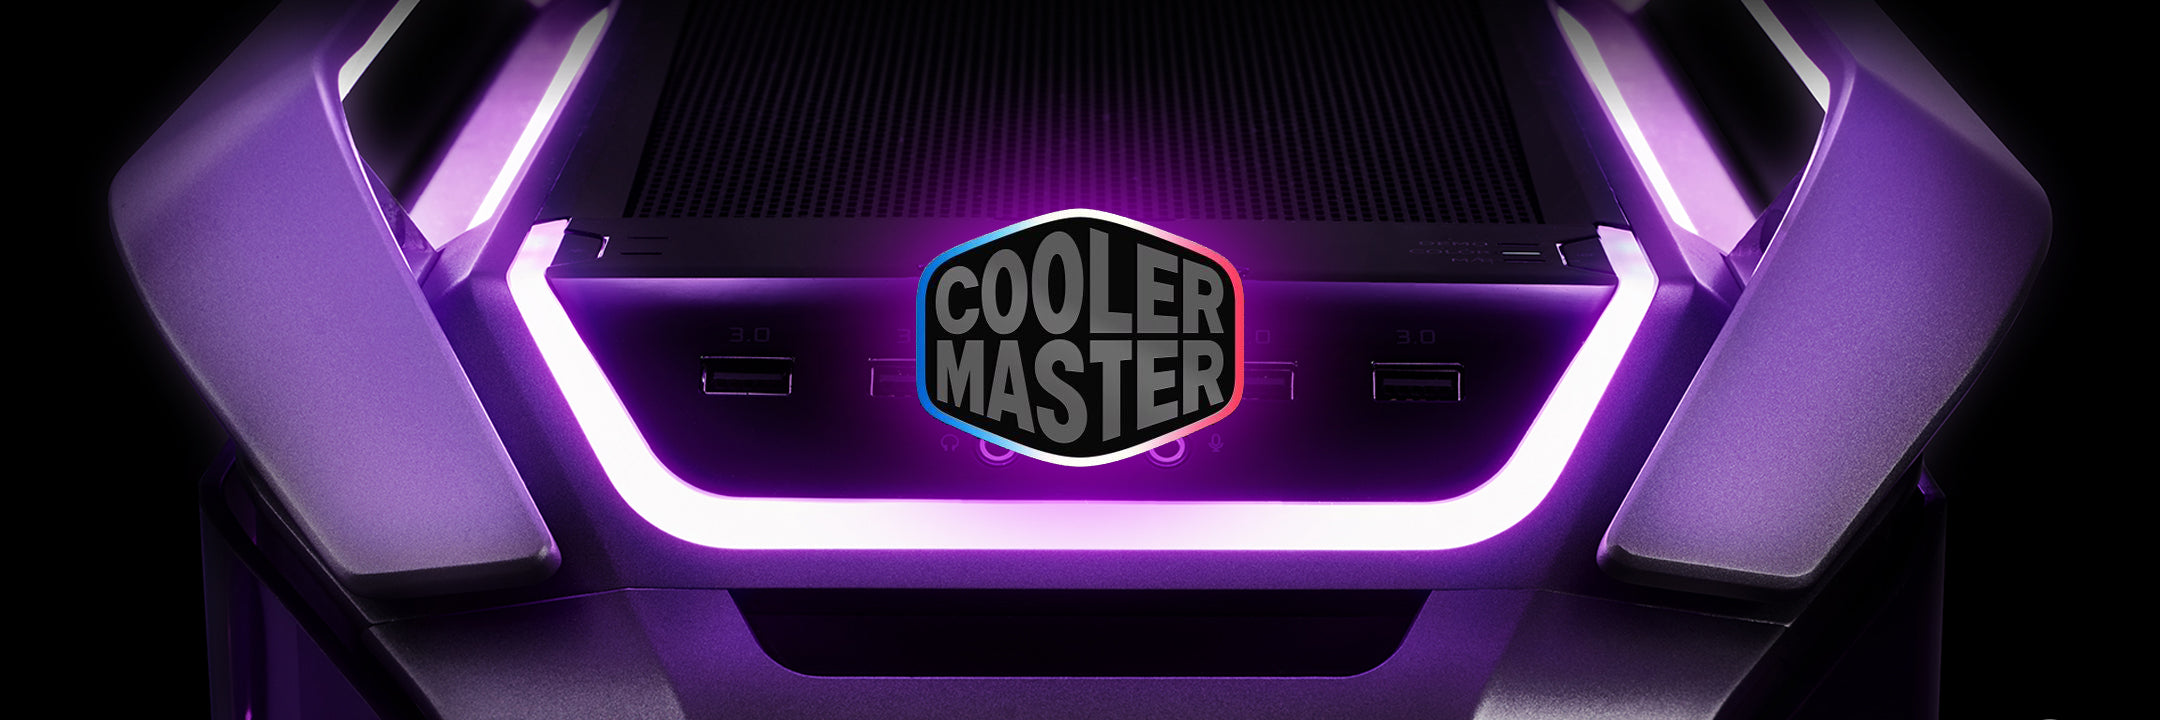 Coolermaster Gaming PC